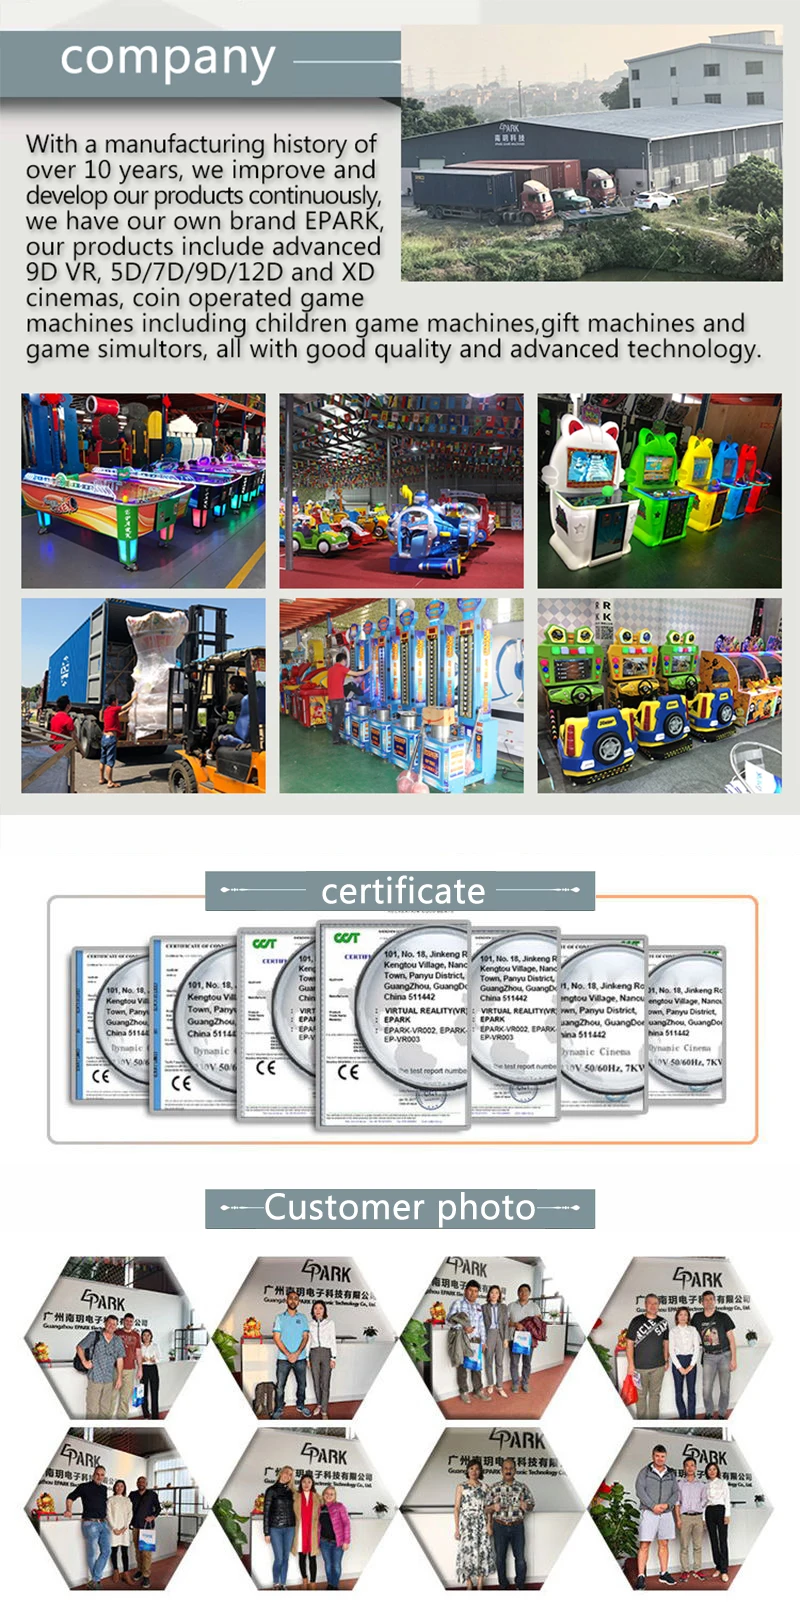 马来西亚室内运动篮球游戏epark 室内拱廊游戏机 Buy 游乐设施出售 乘坐汽车 儿童游乐设施出售product On Alibaba Com